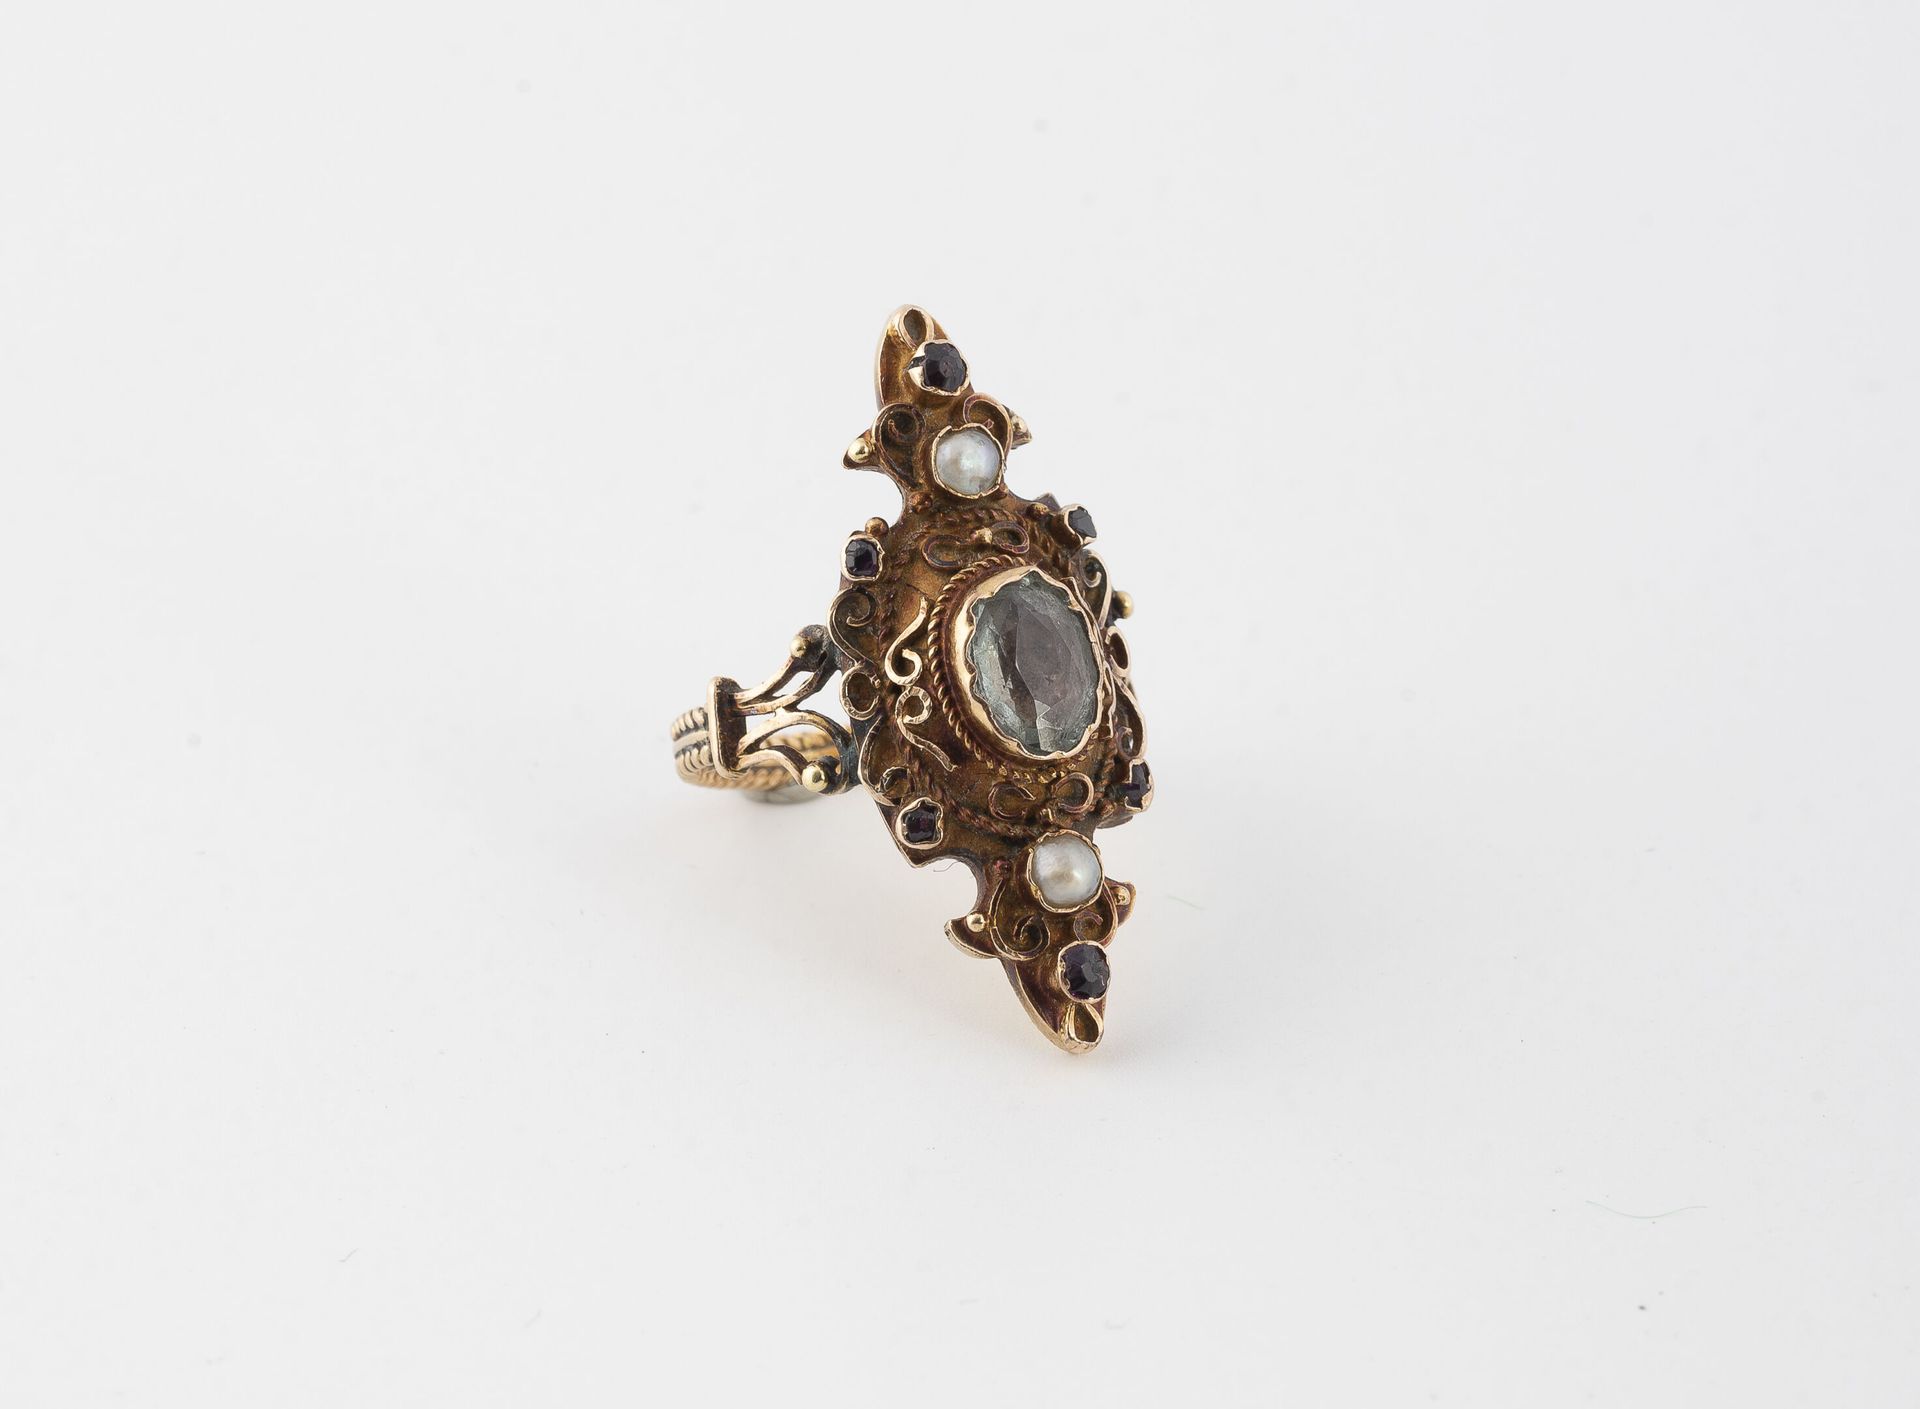 Null 玫瑰金(750)侯爵型花戒，中心镶嵌了一颗封闭式的椭圆形刻面海蓝宝石，周围有金丝卷轴、小型圆形刻面红宝石和两个封闭式的白色半宝石。
戒指上有编织的图案&hellip;